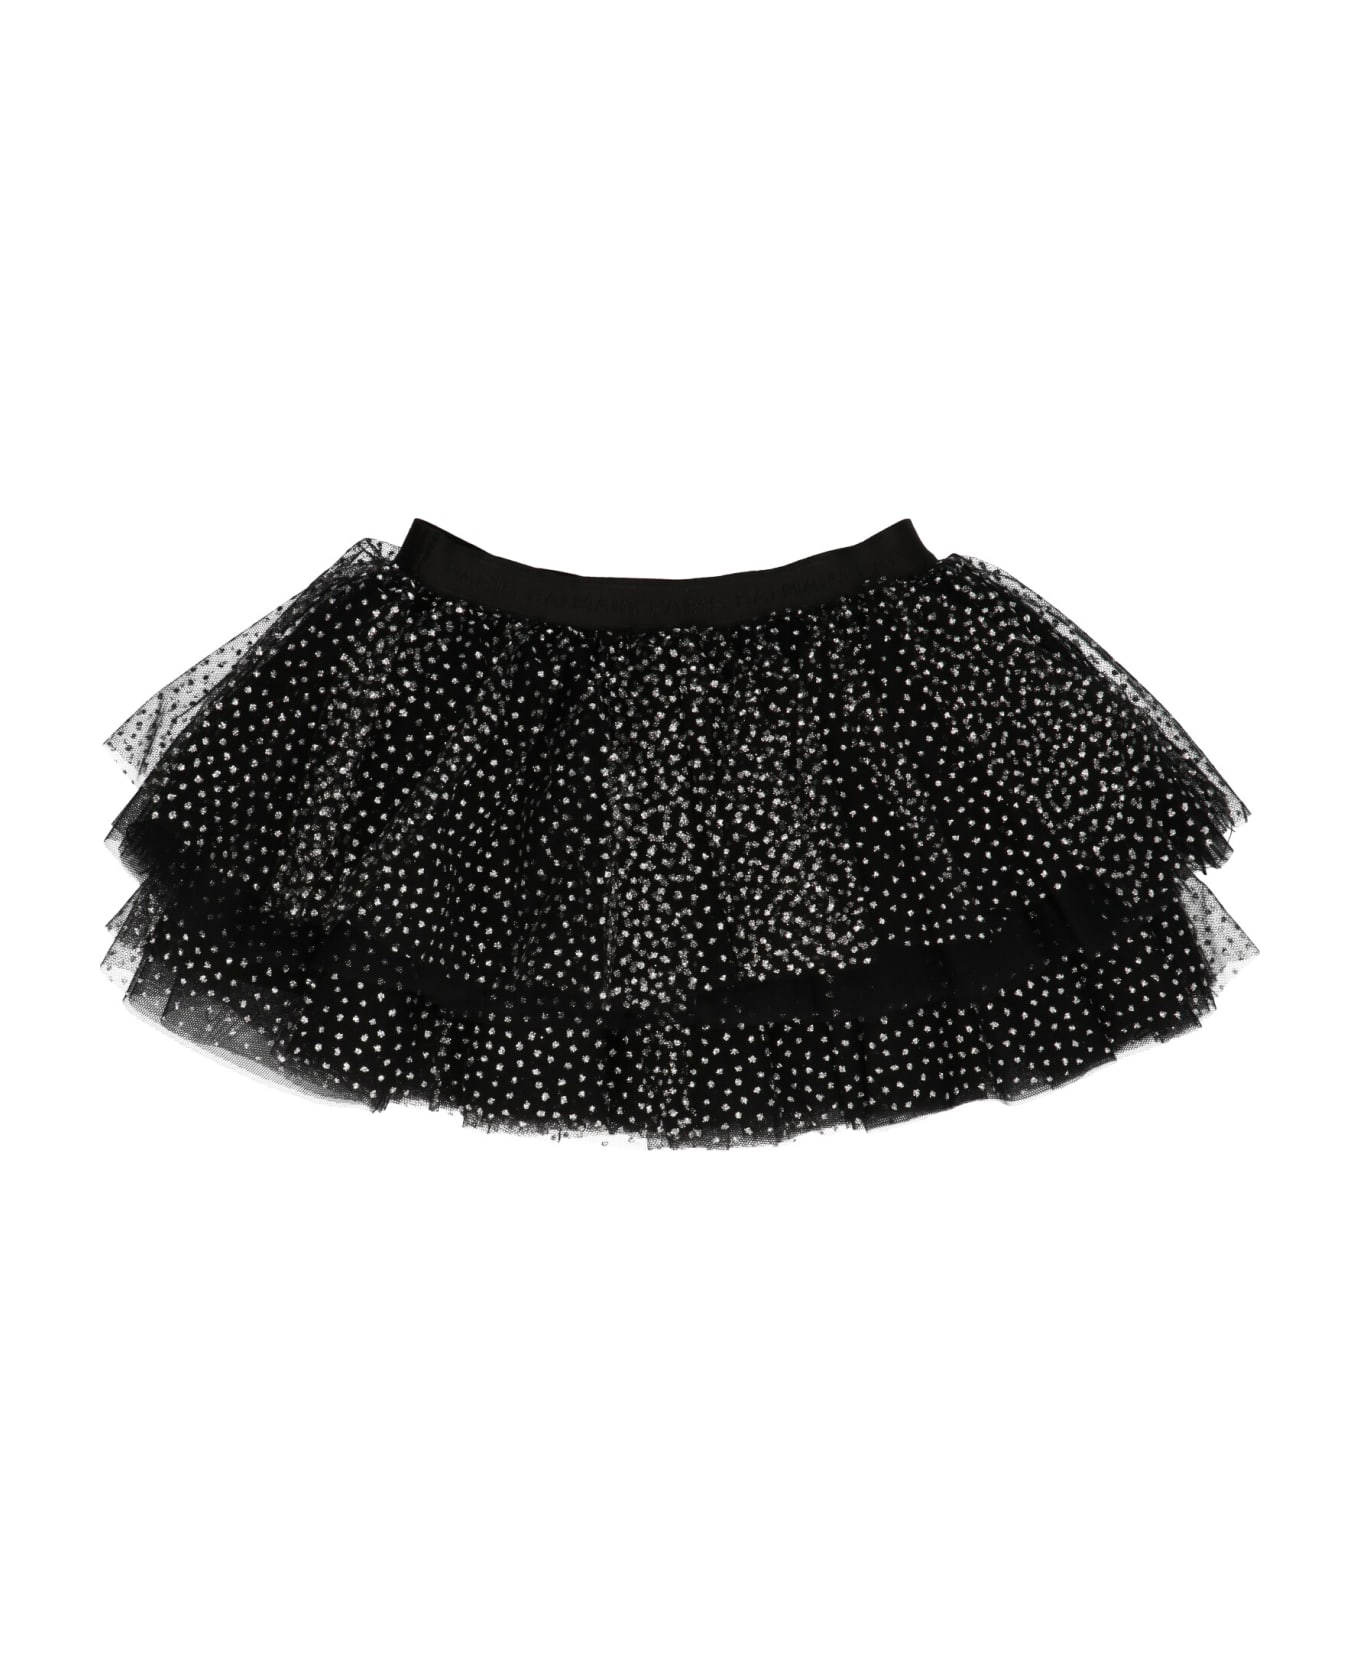 Balmain Glitter Tulle Skirt - Black  